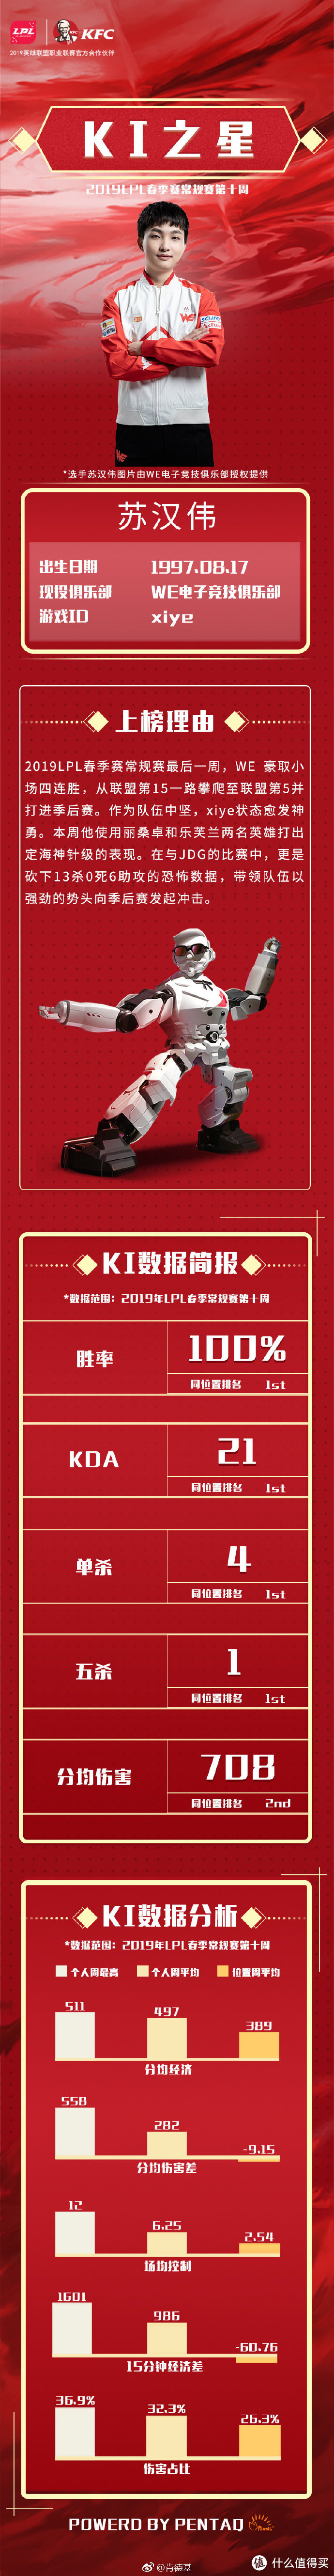 重返游戏：肯德基X英雄联盟S8斩获亚太媒体广告节大奖